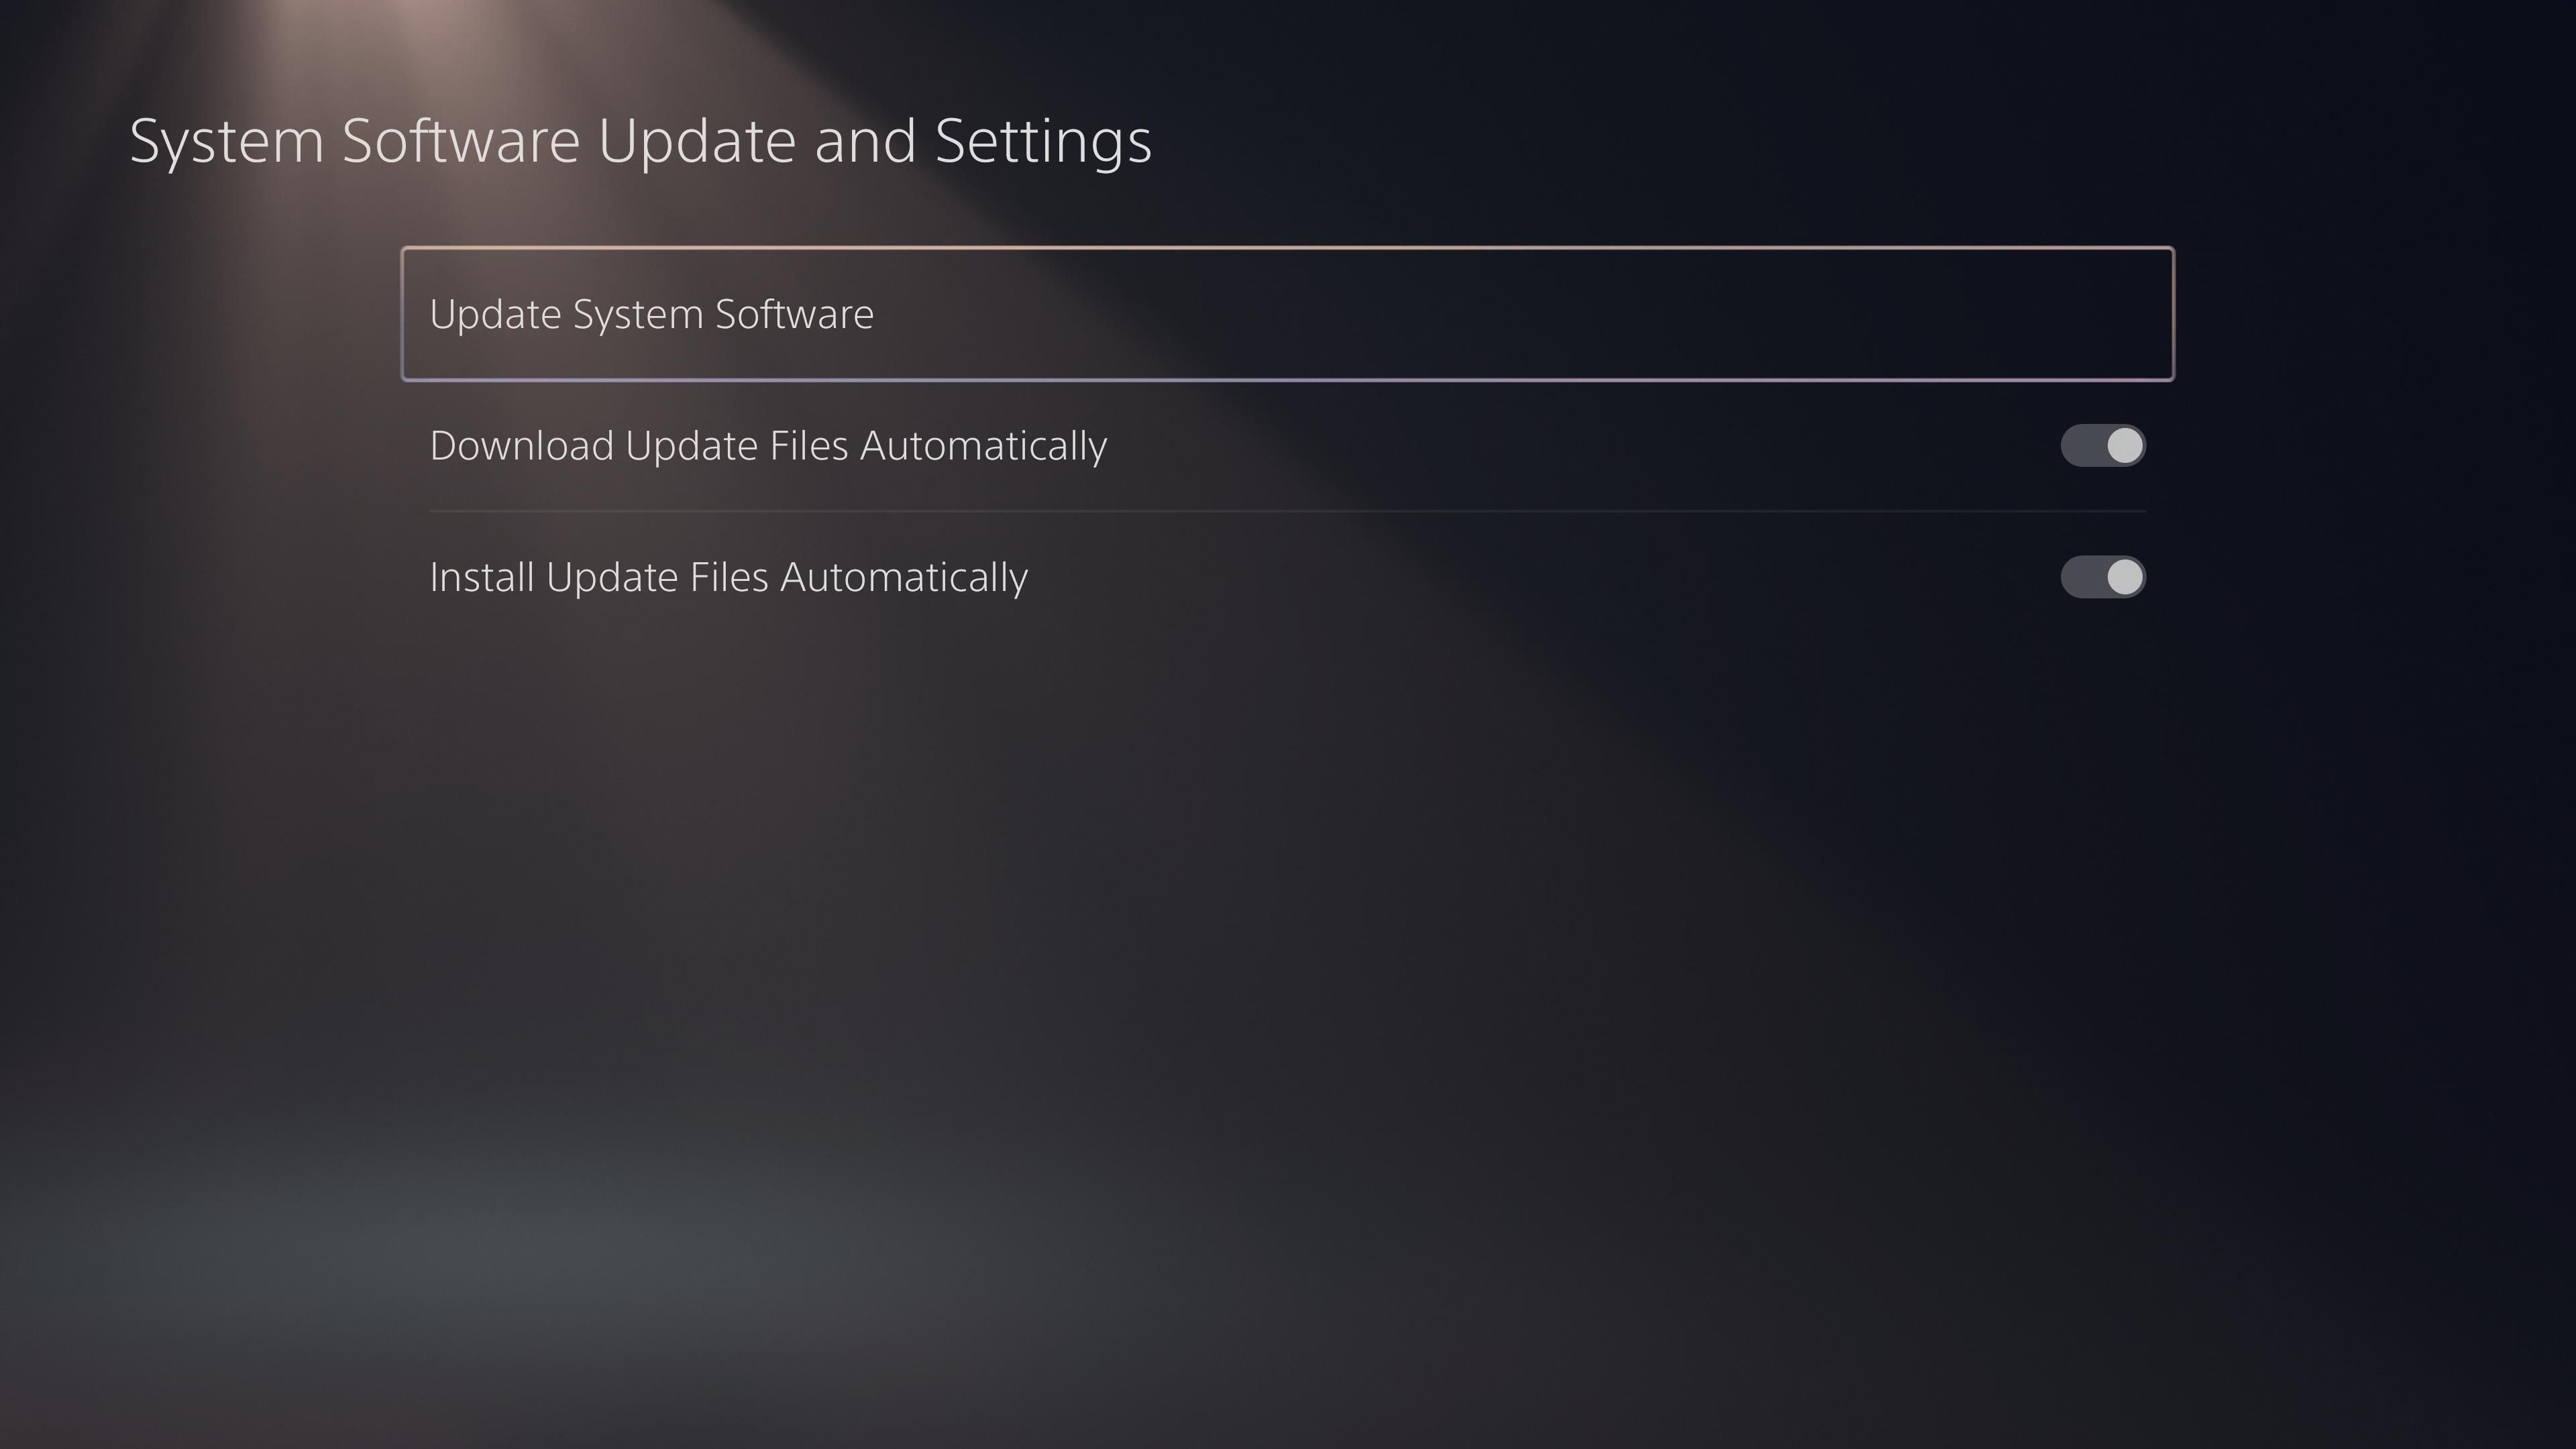 PS5 Update System Software - Come aggiornare la tua PlayStation 5